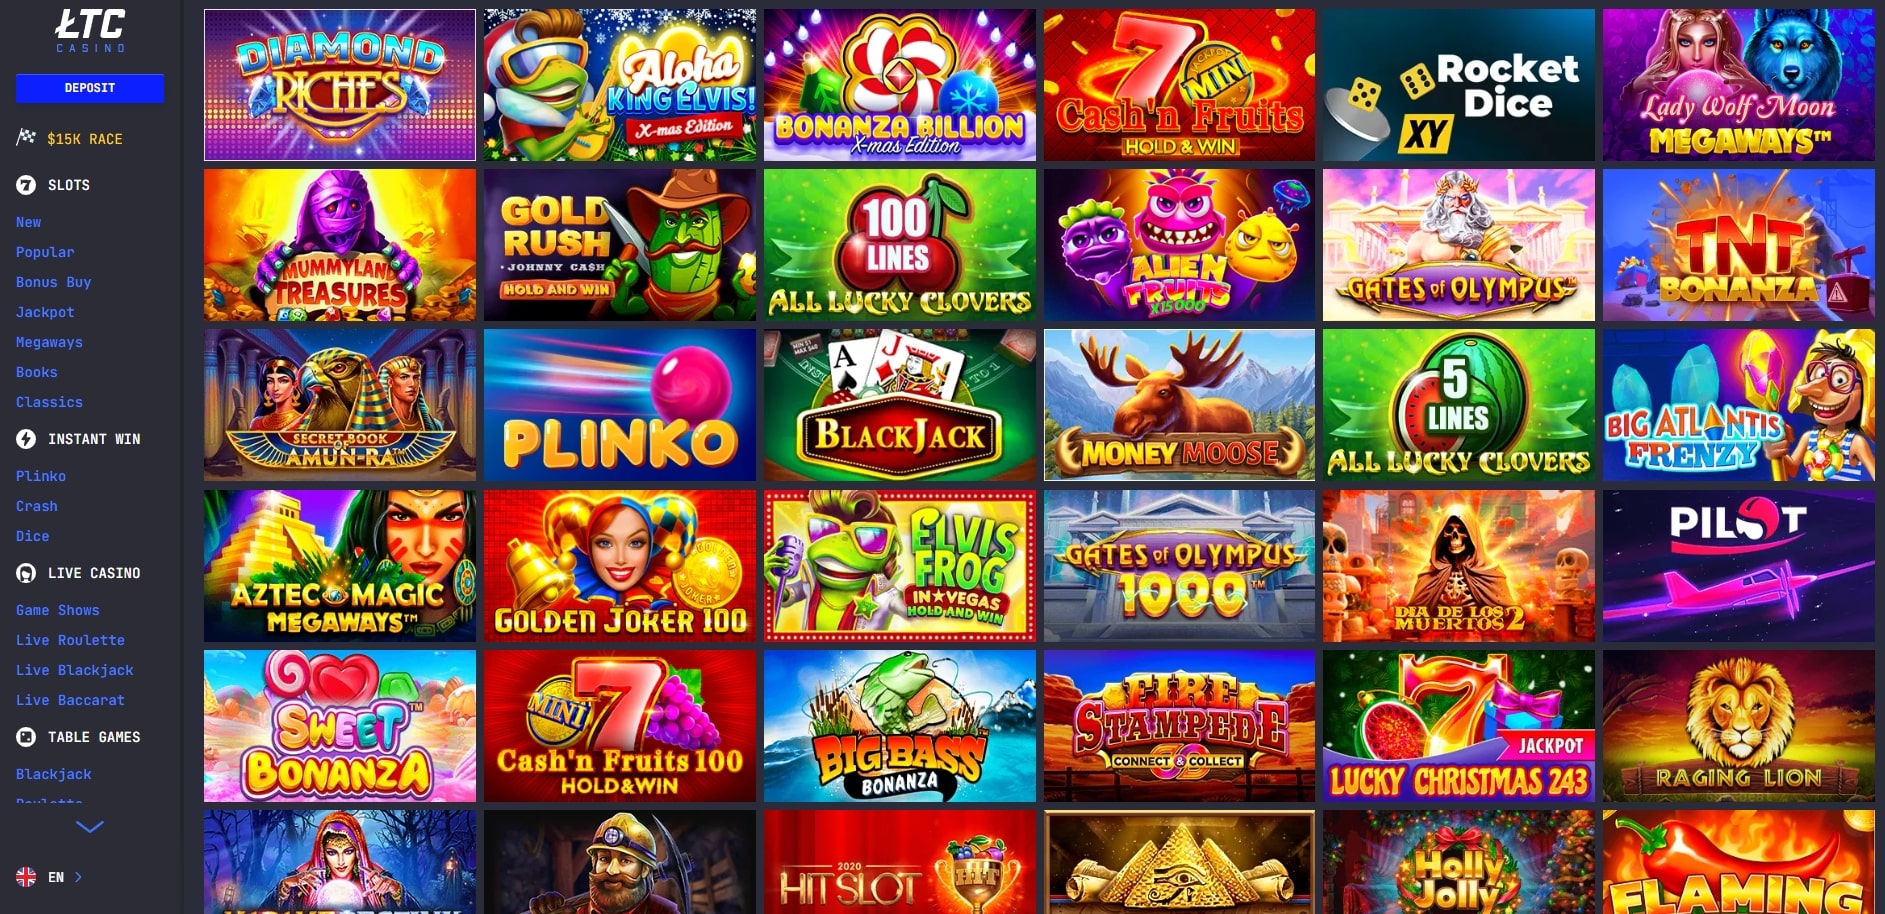 Best LTC Casino Games